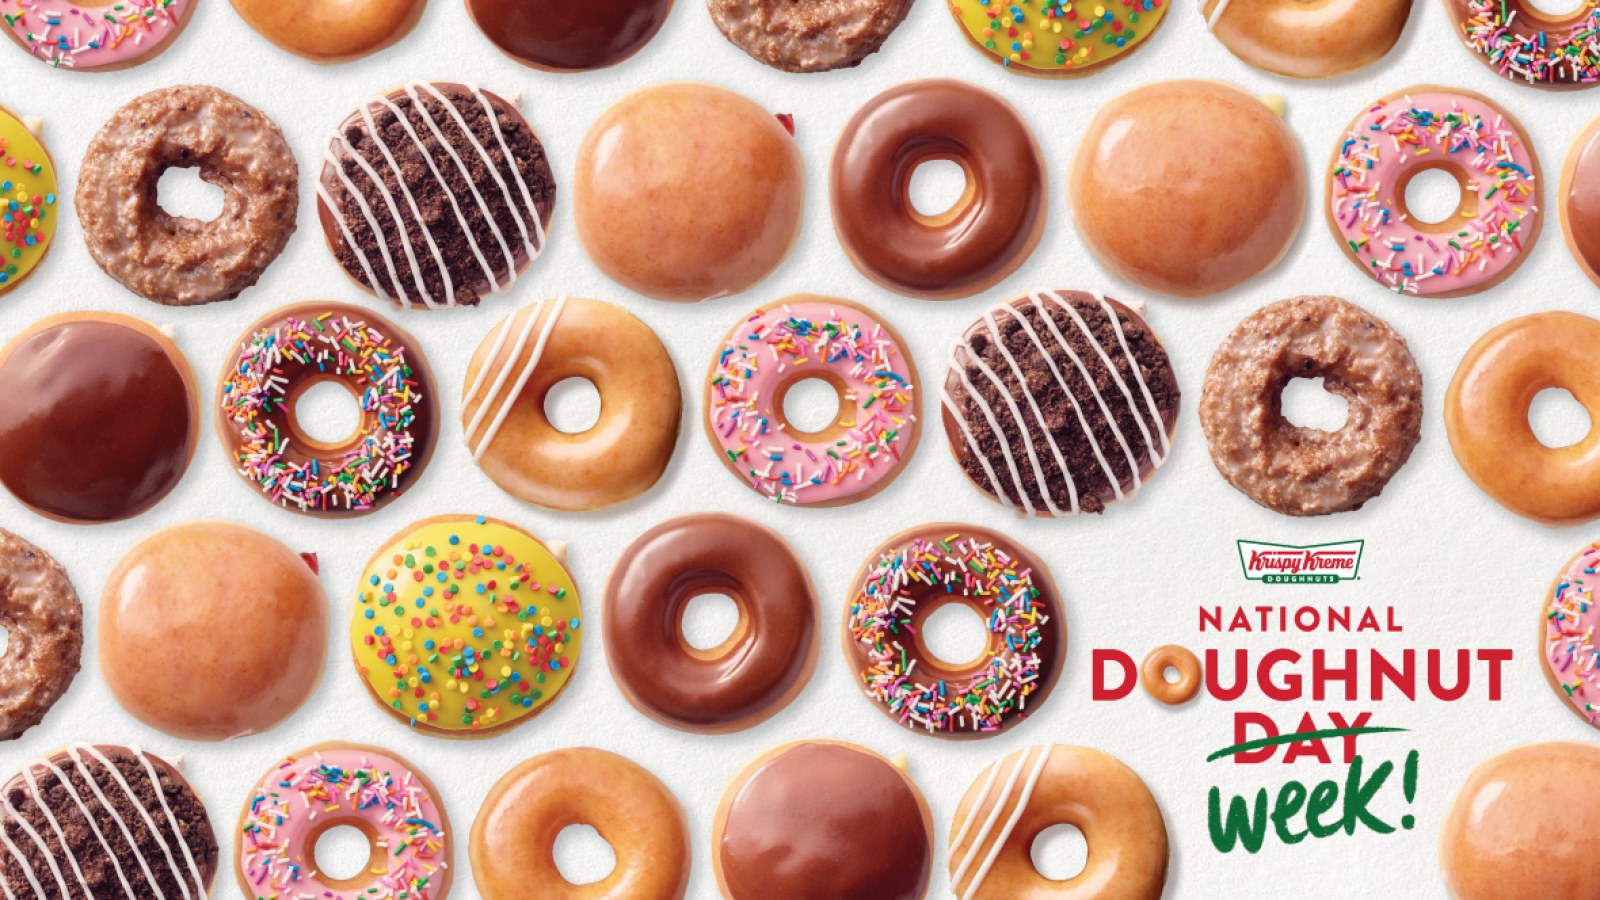 Krispy Kreme Is Giving Away Donuts All Week